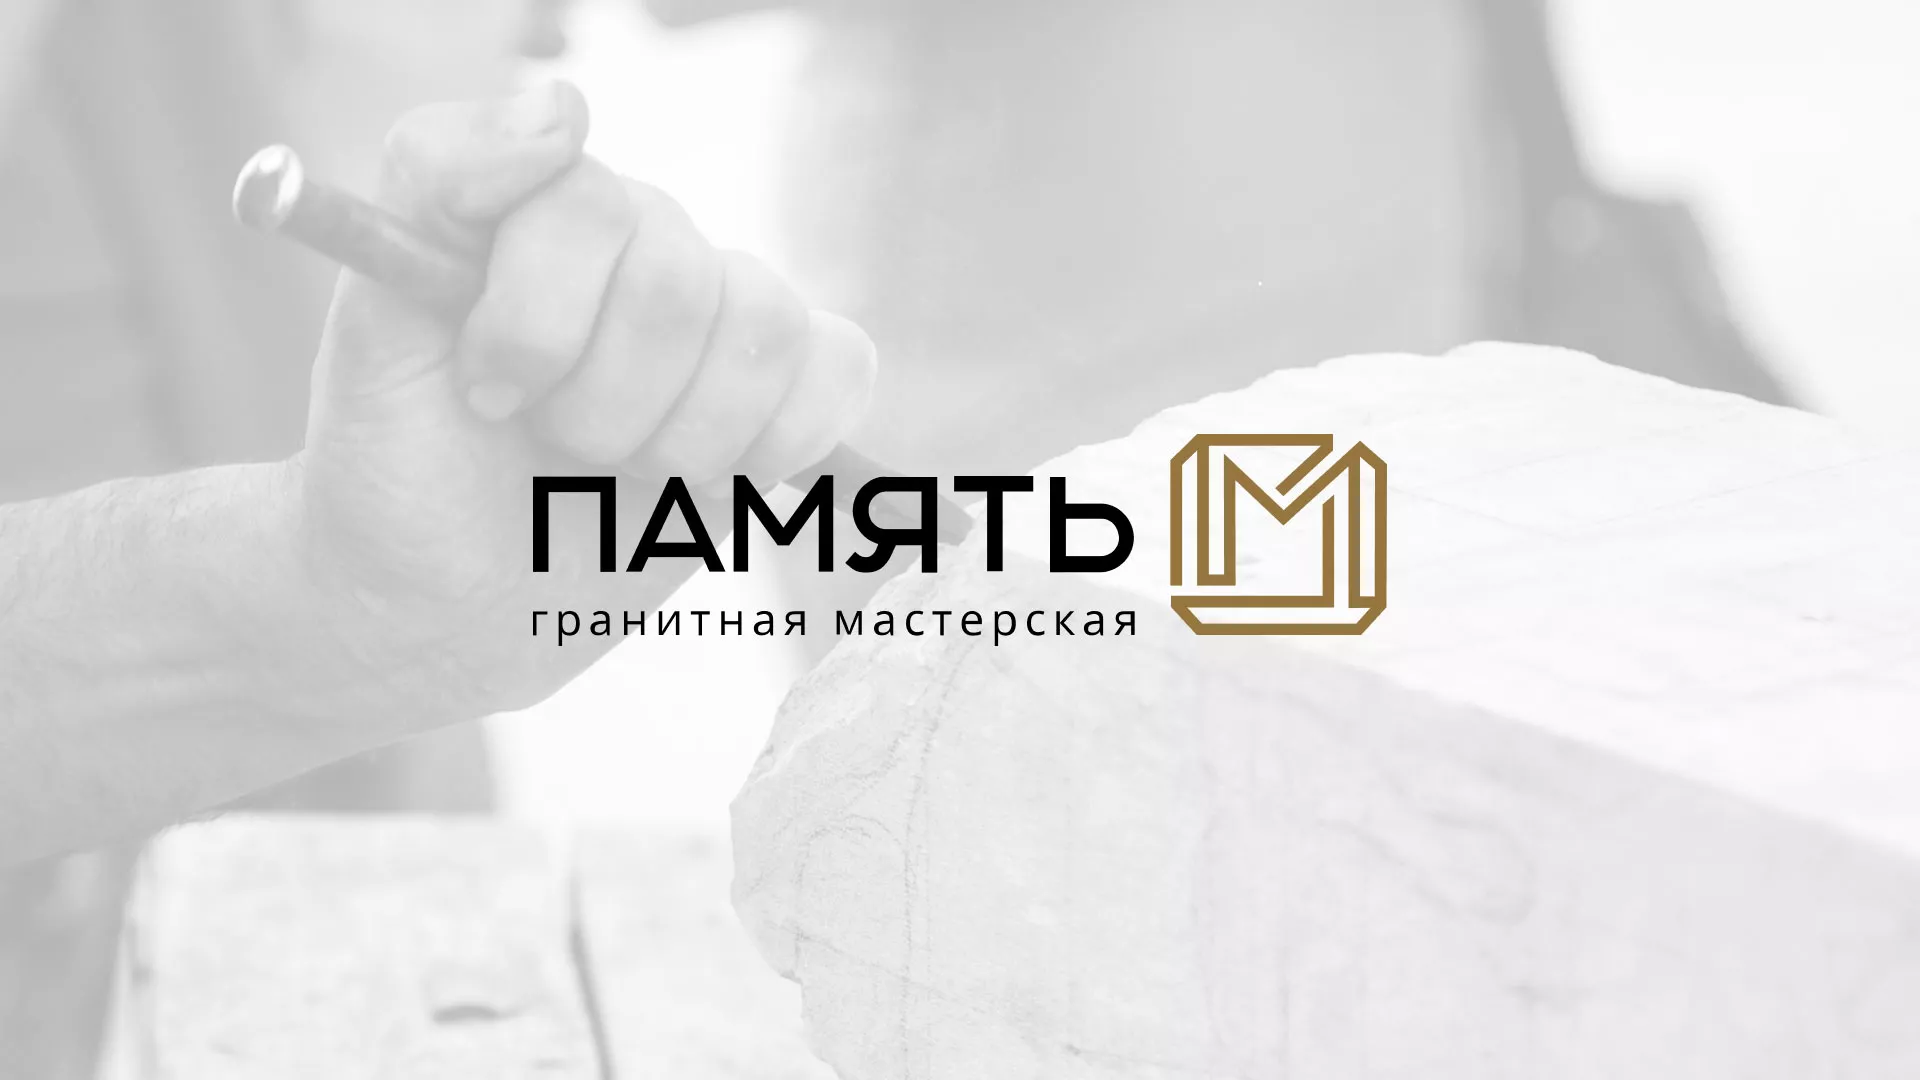 Разработка логотипа и сайта компании «Память-М» в Петровске-Забайкальском